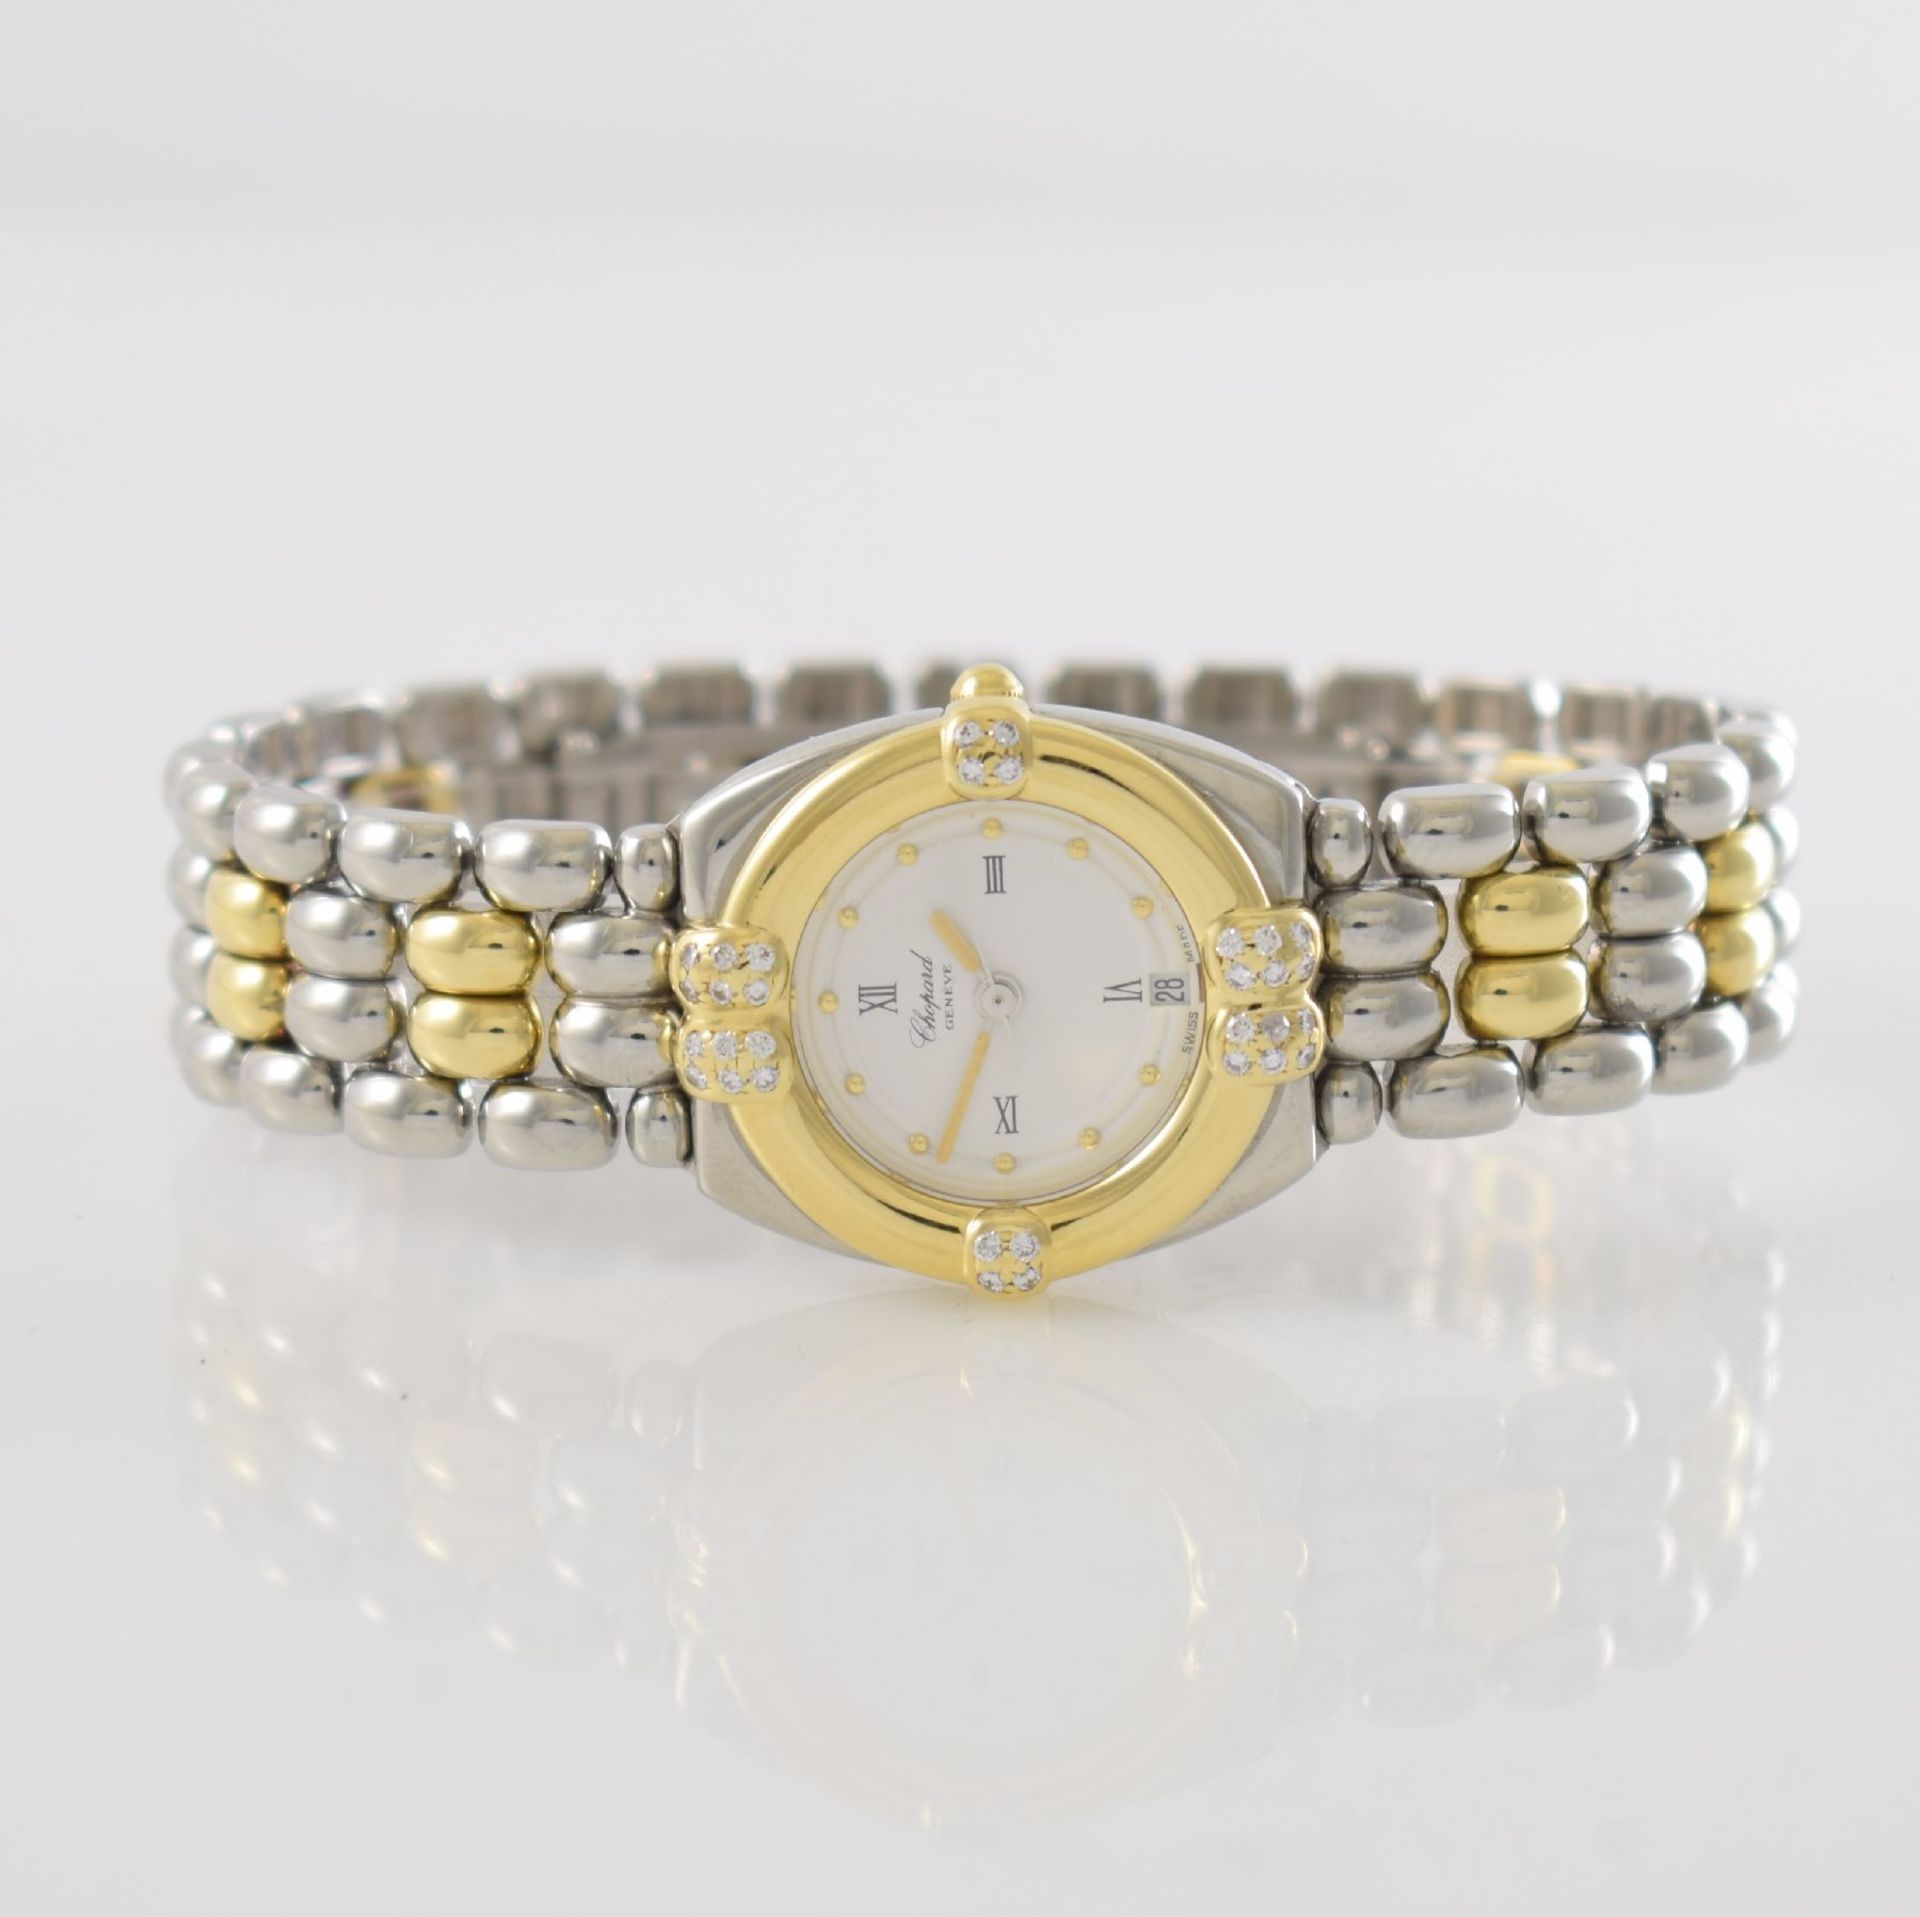 CHOPARD ladies wristwatch series Gstaad, Switzerland around 2000, quartz, stainless steel/gold